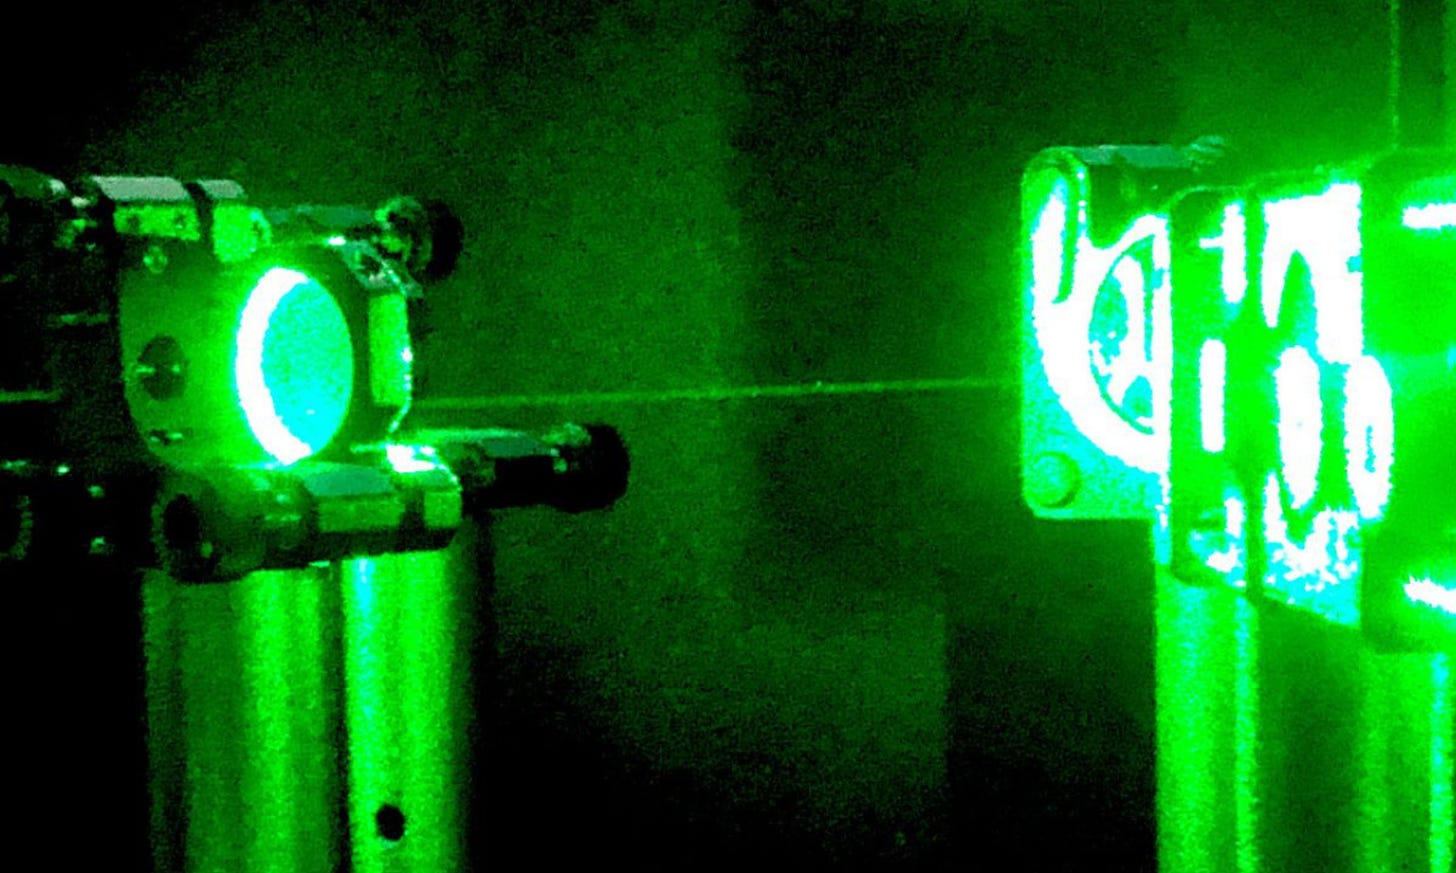 Immagine che contiene Neon, notte, verde, luce

Descrizione generata automaticamente